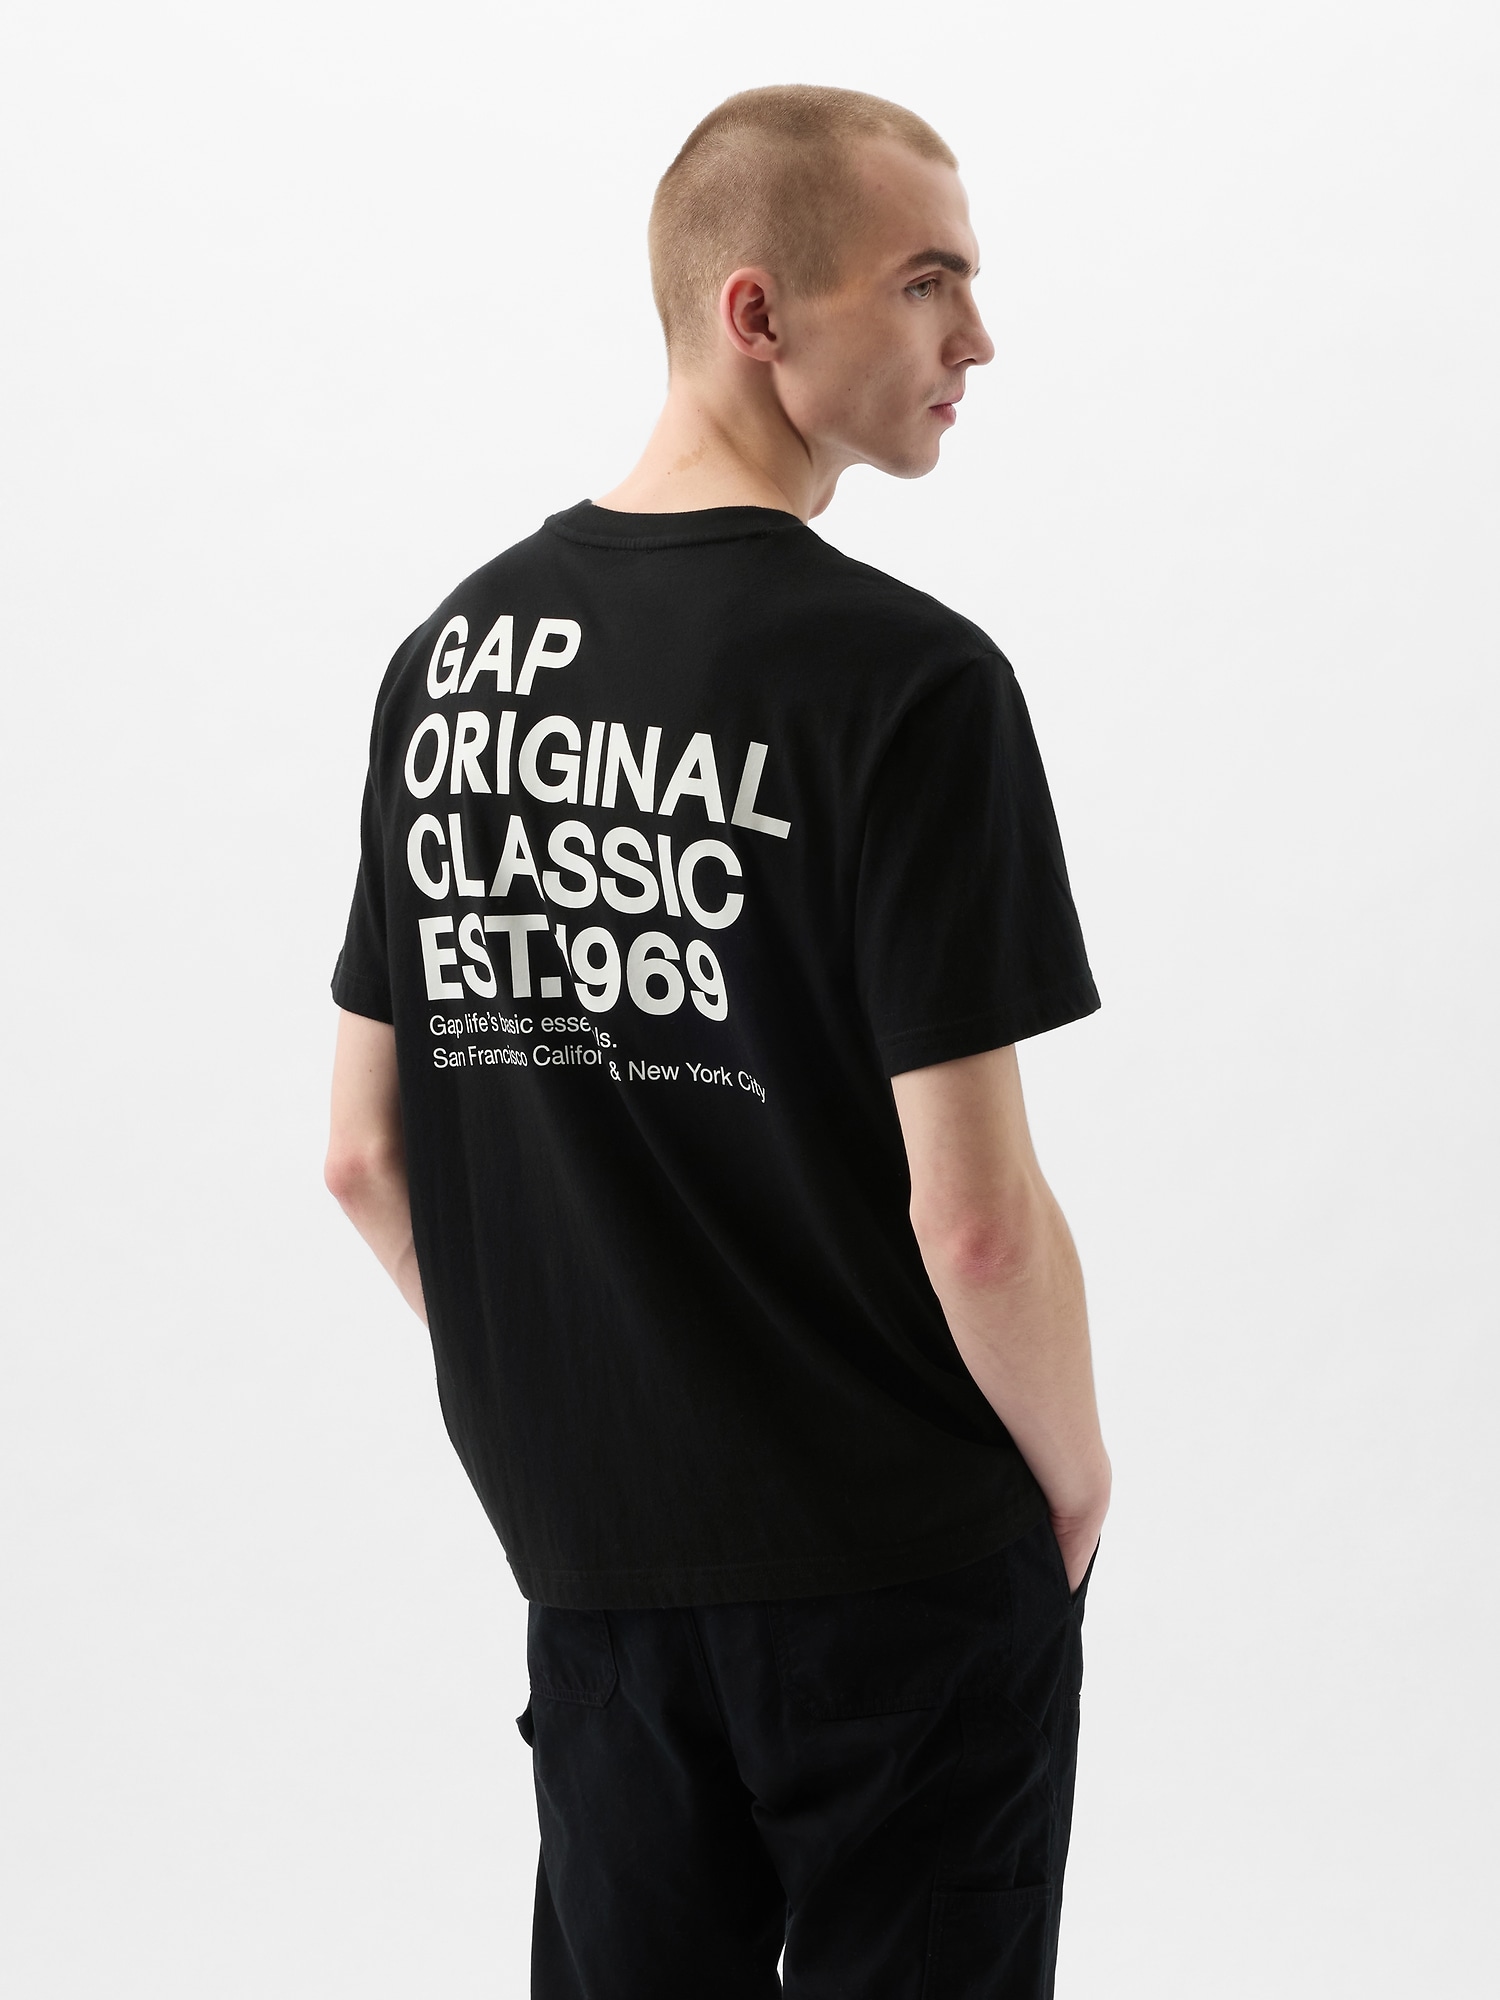 Tシャツ・トップス (ウィメンズ) | Gap公式オンラインストア